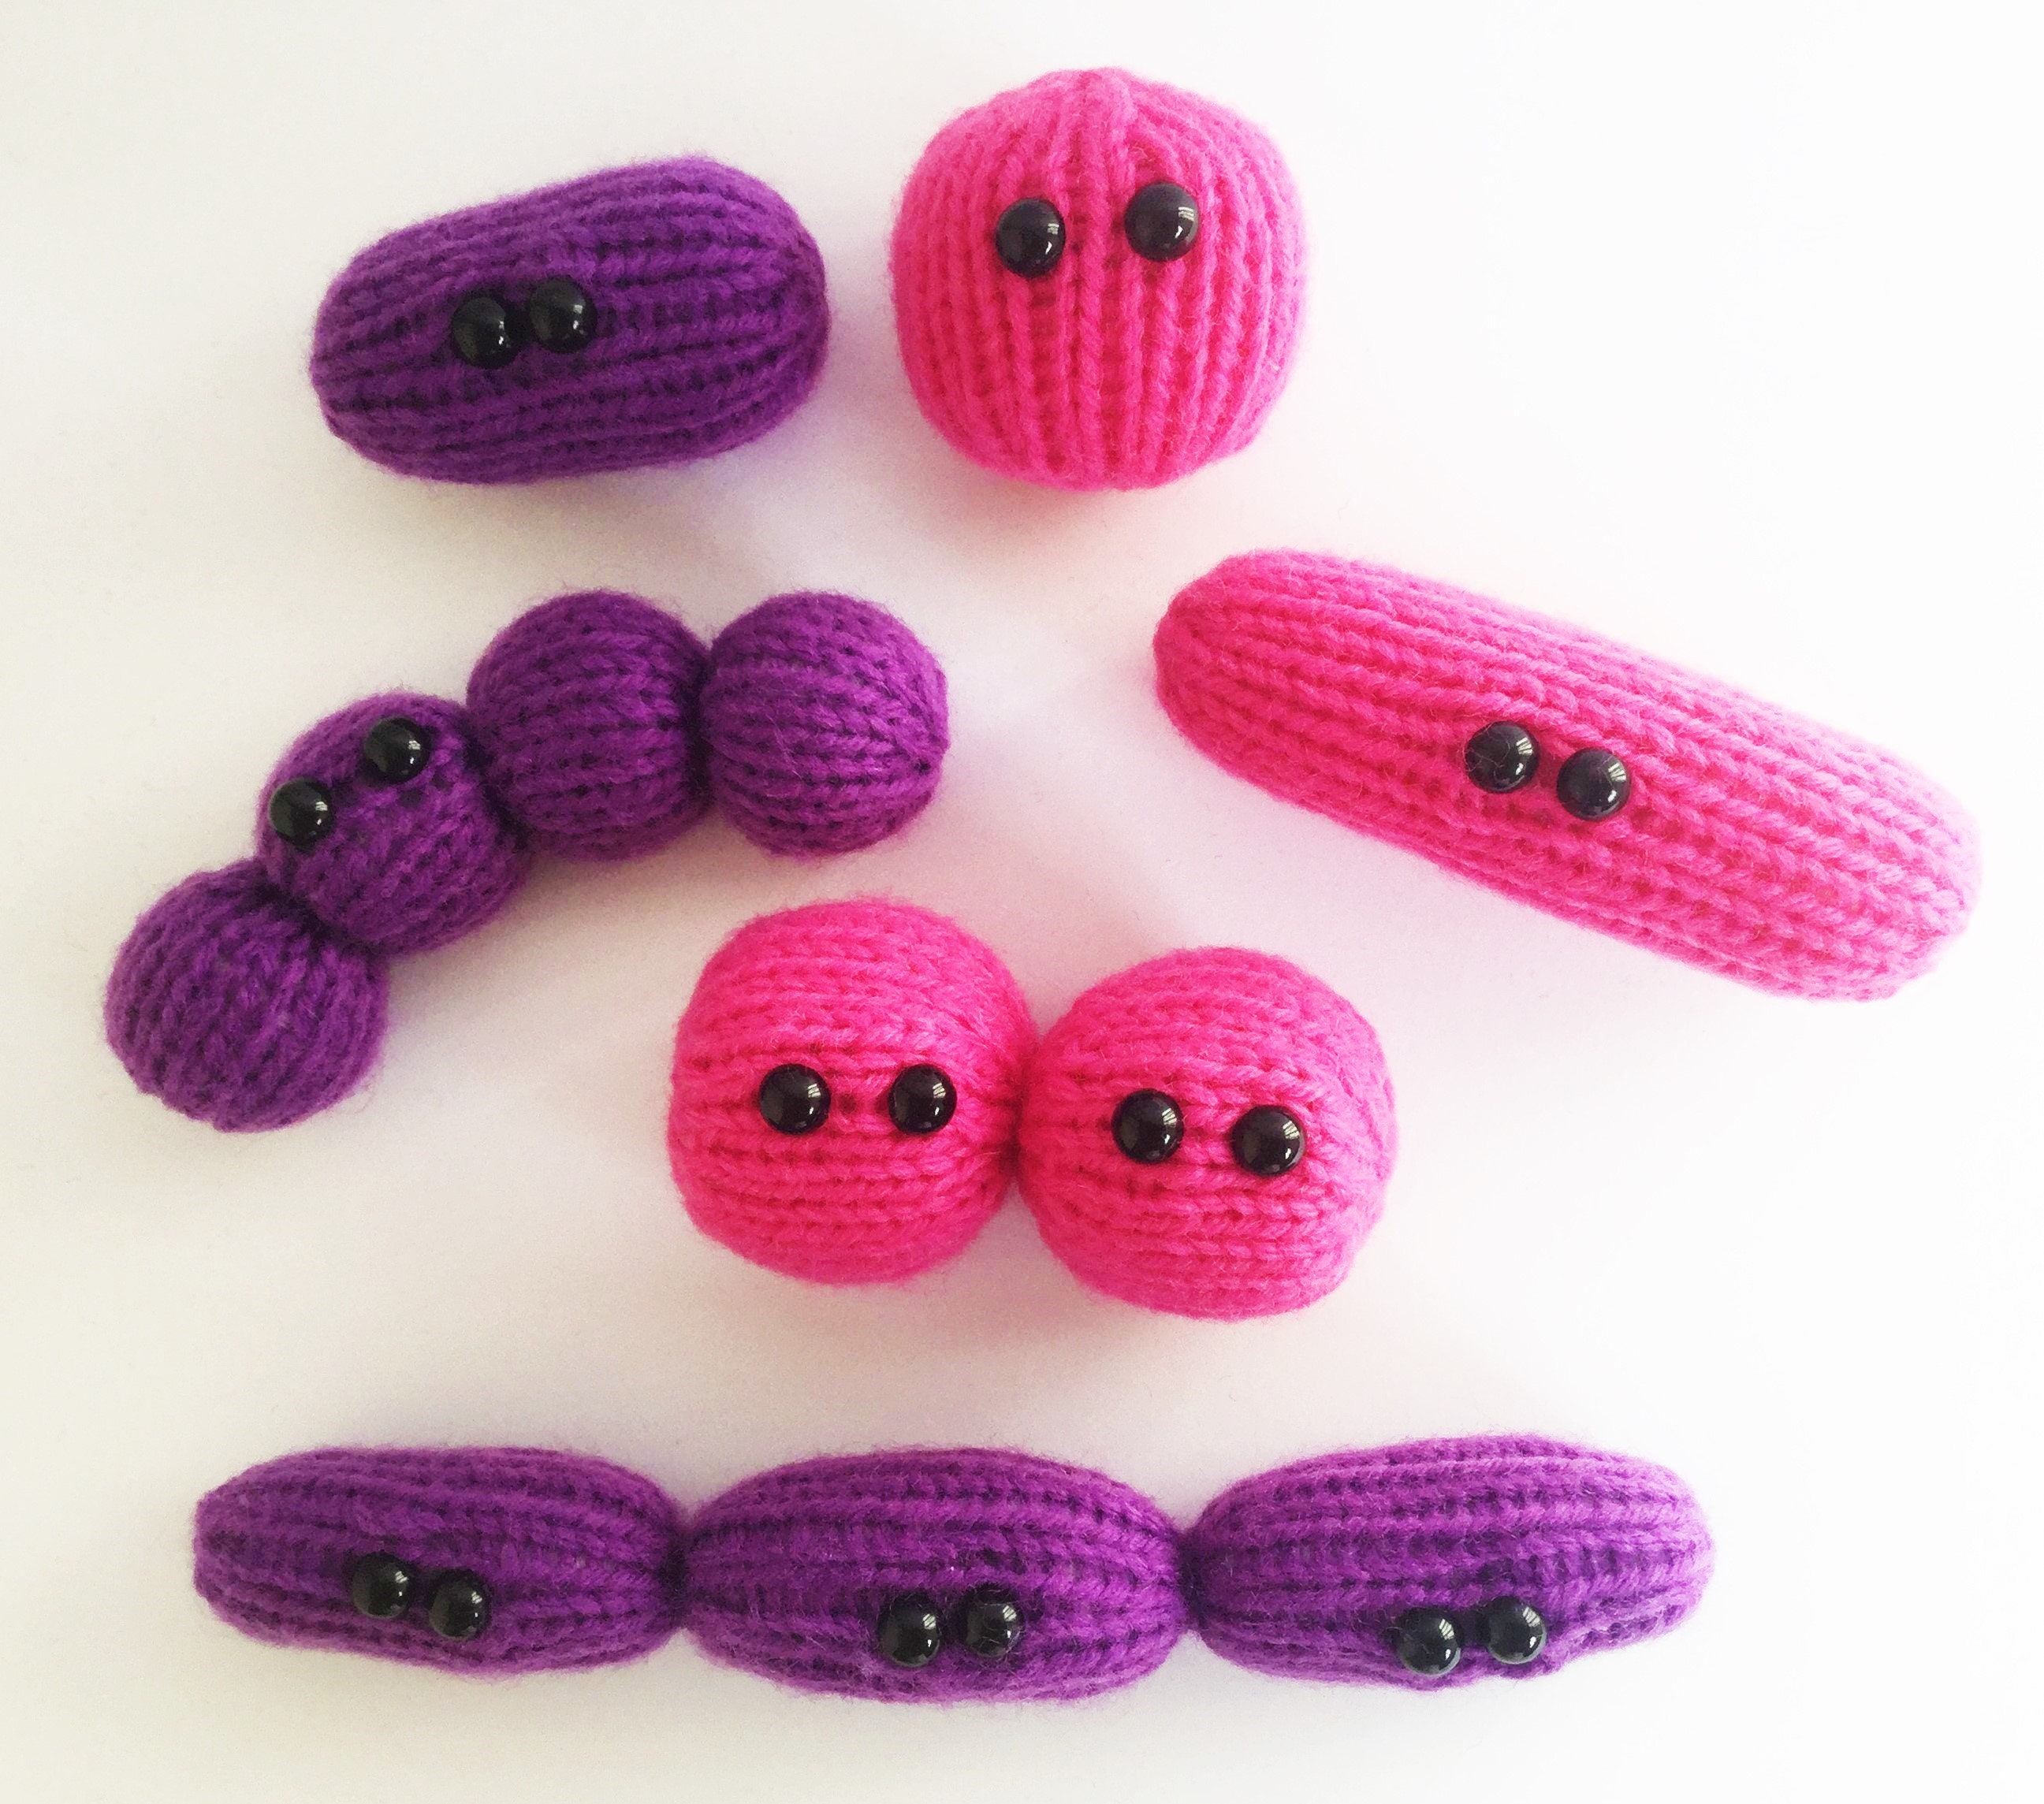 Amigurumi Yarn Family Knitting pattern by Dawn Finney